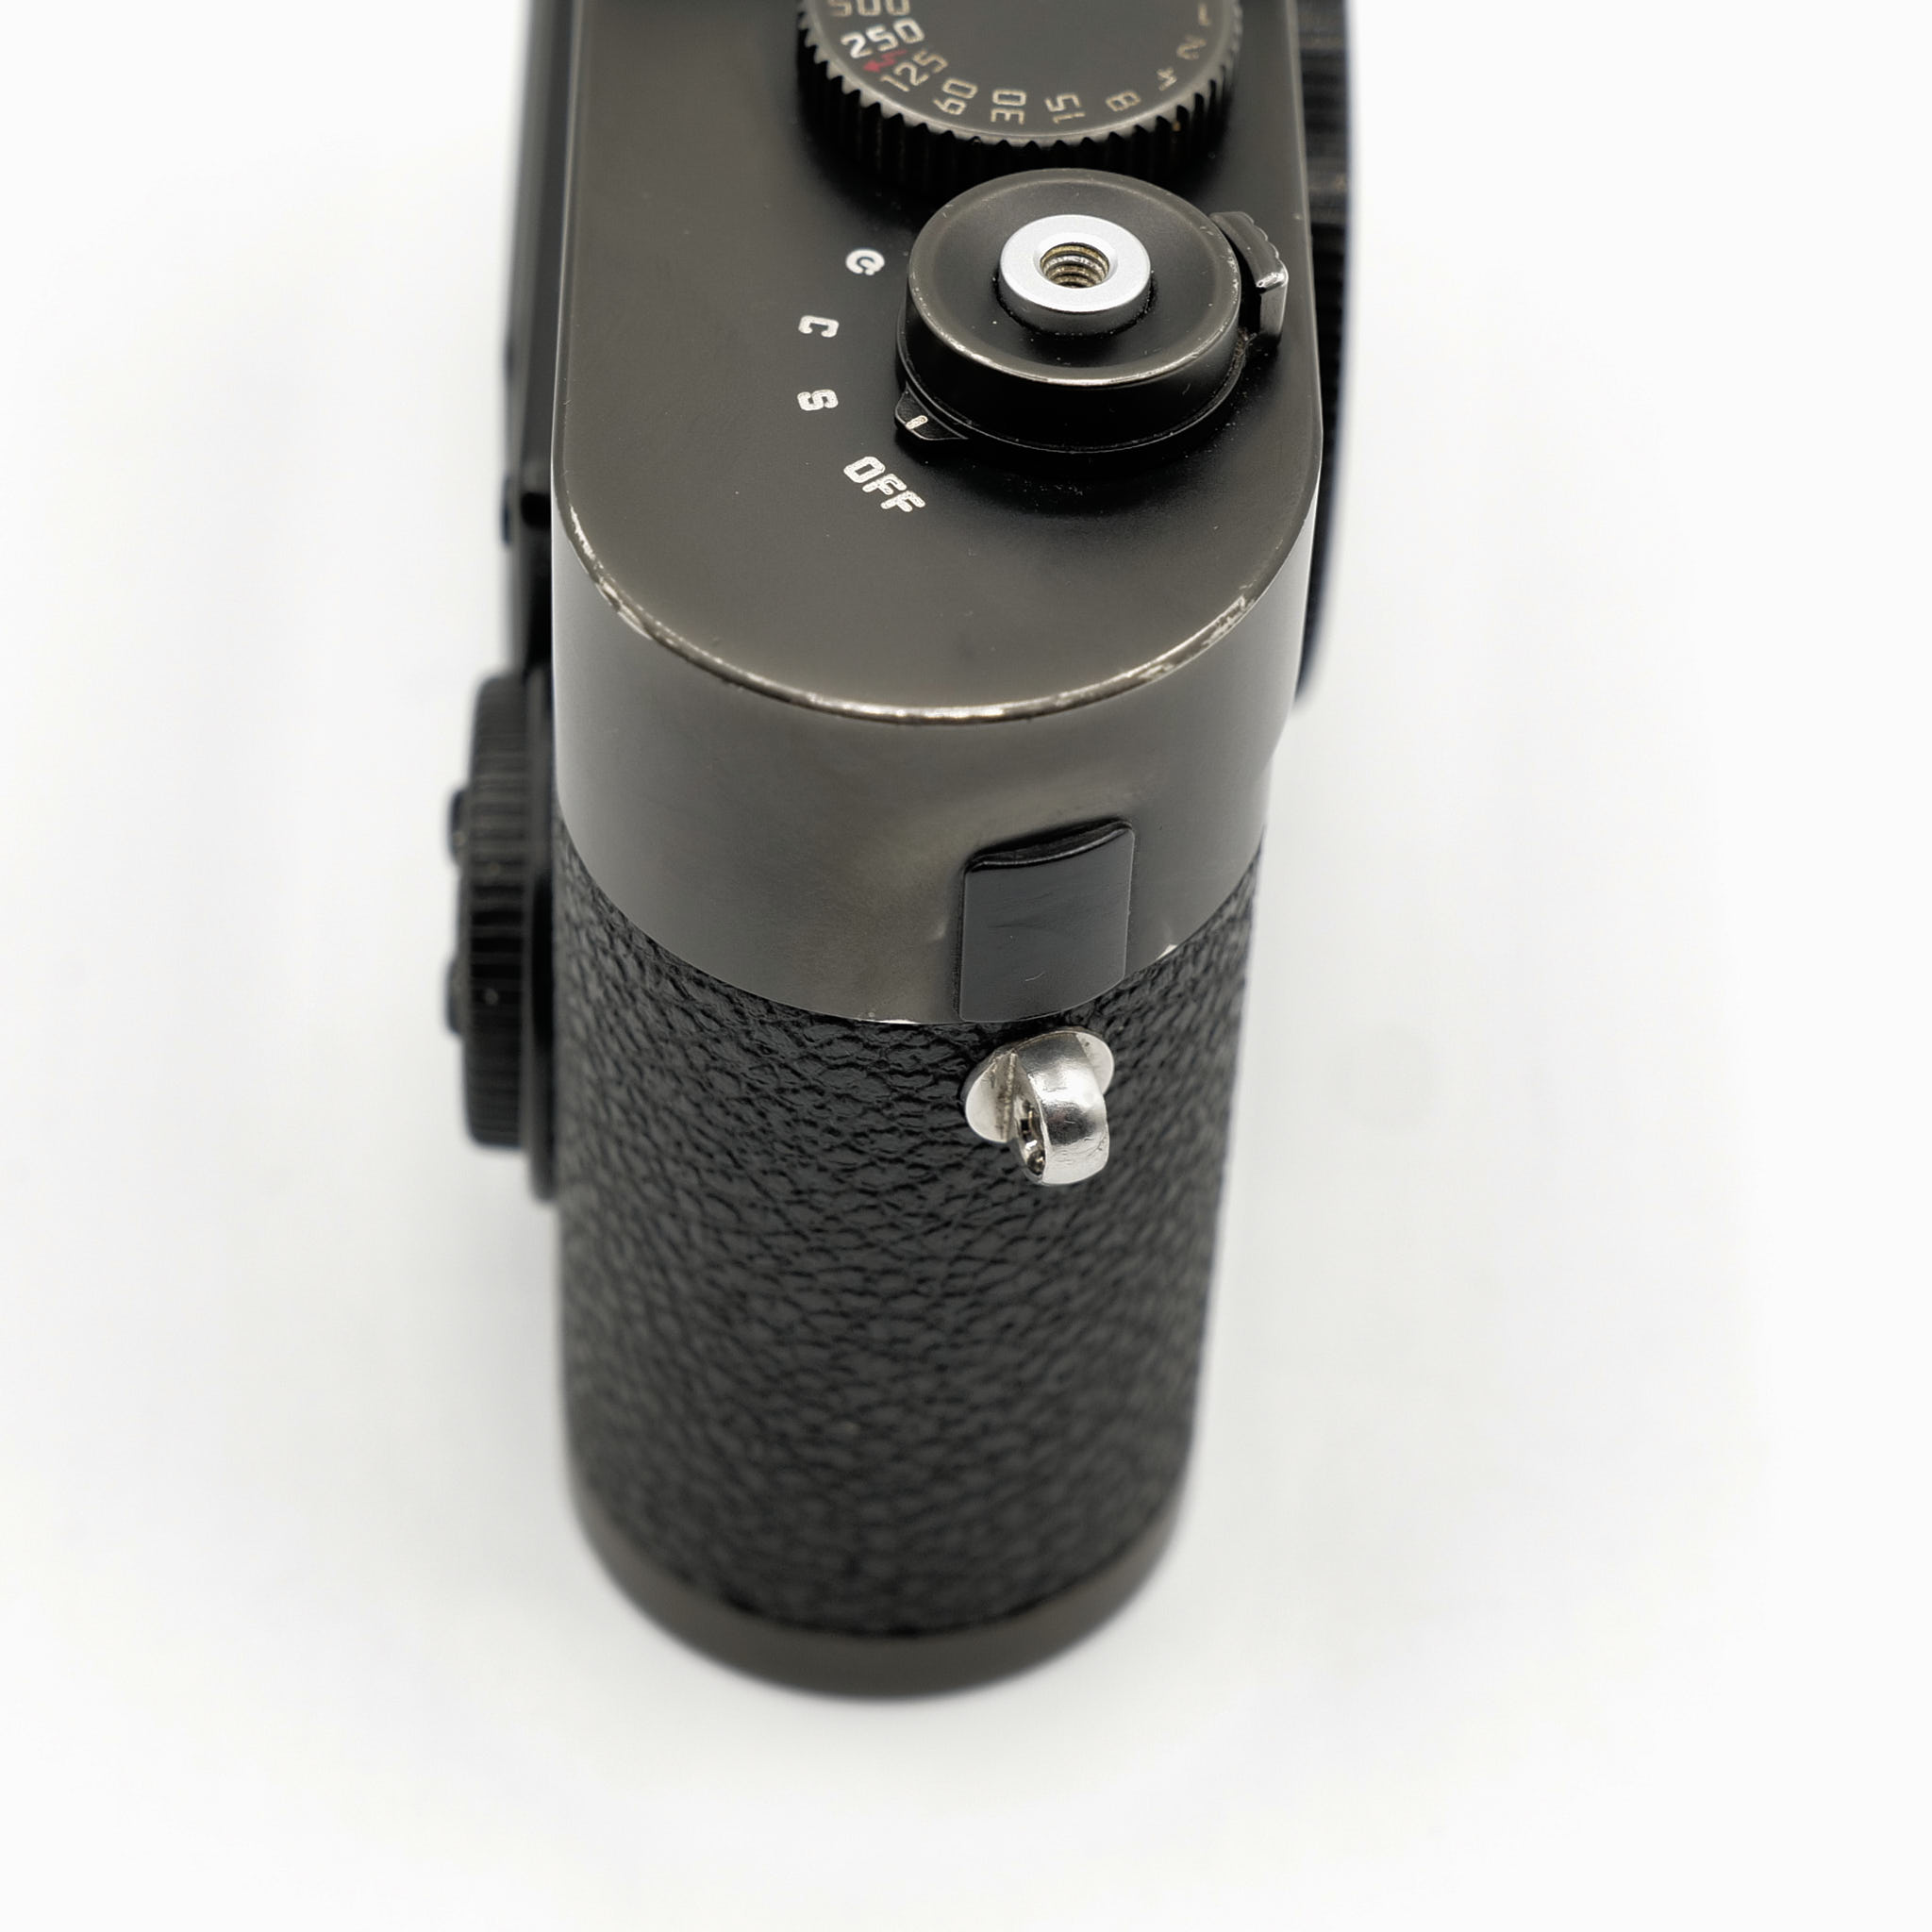 Leica M8 - 10701